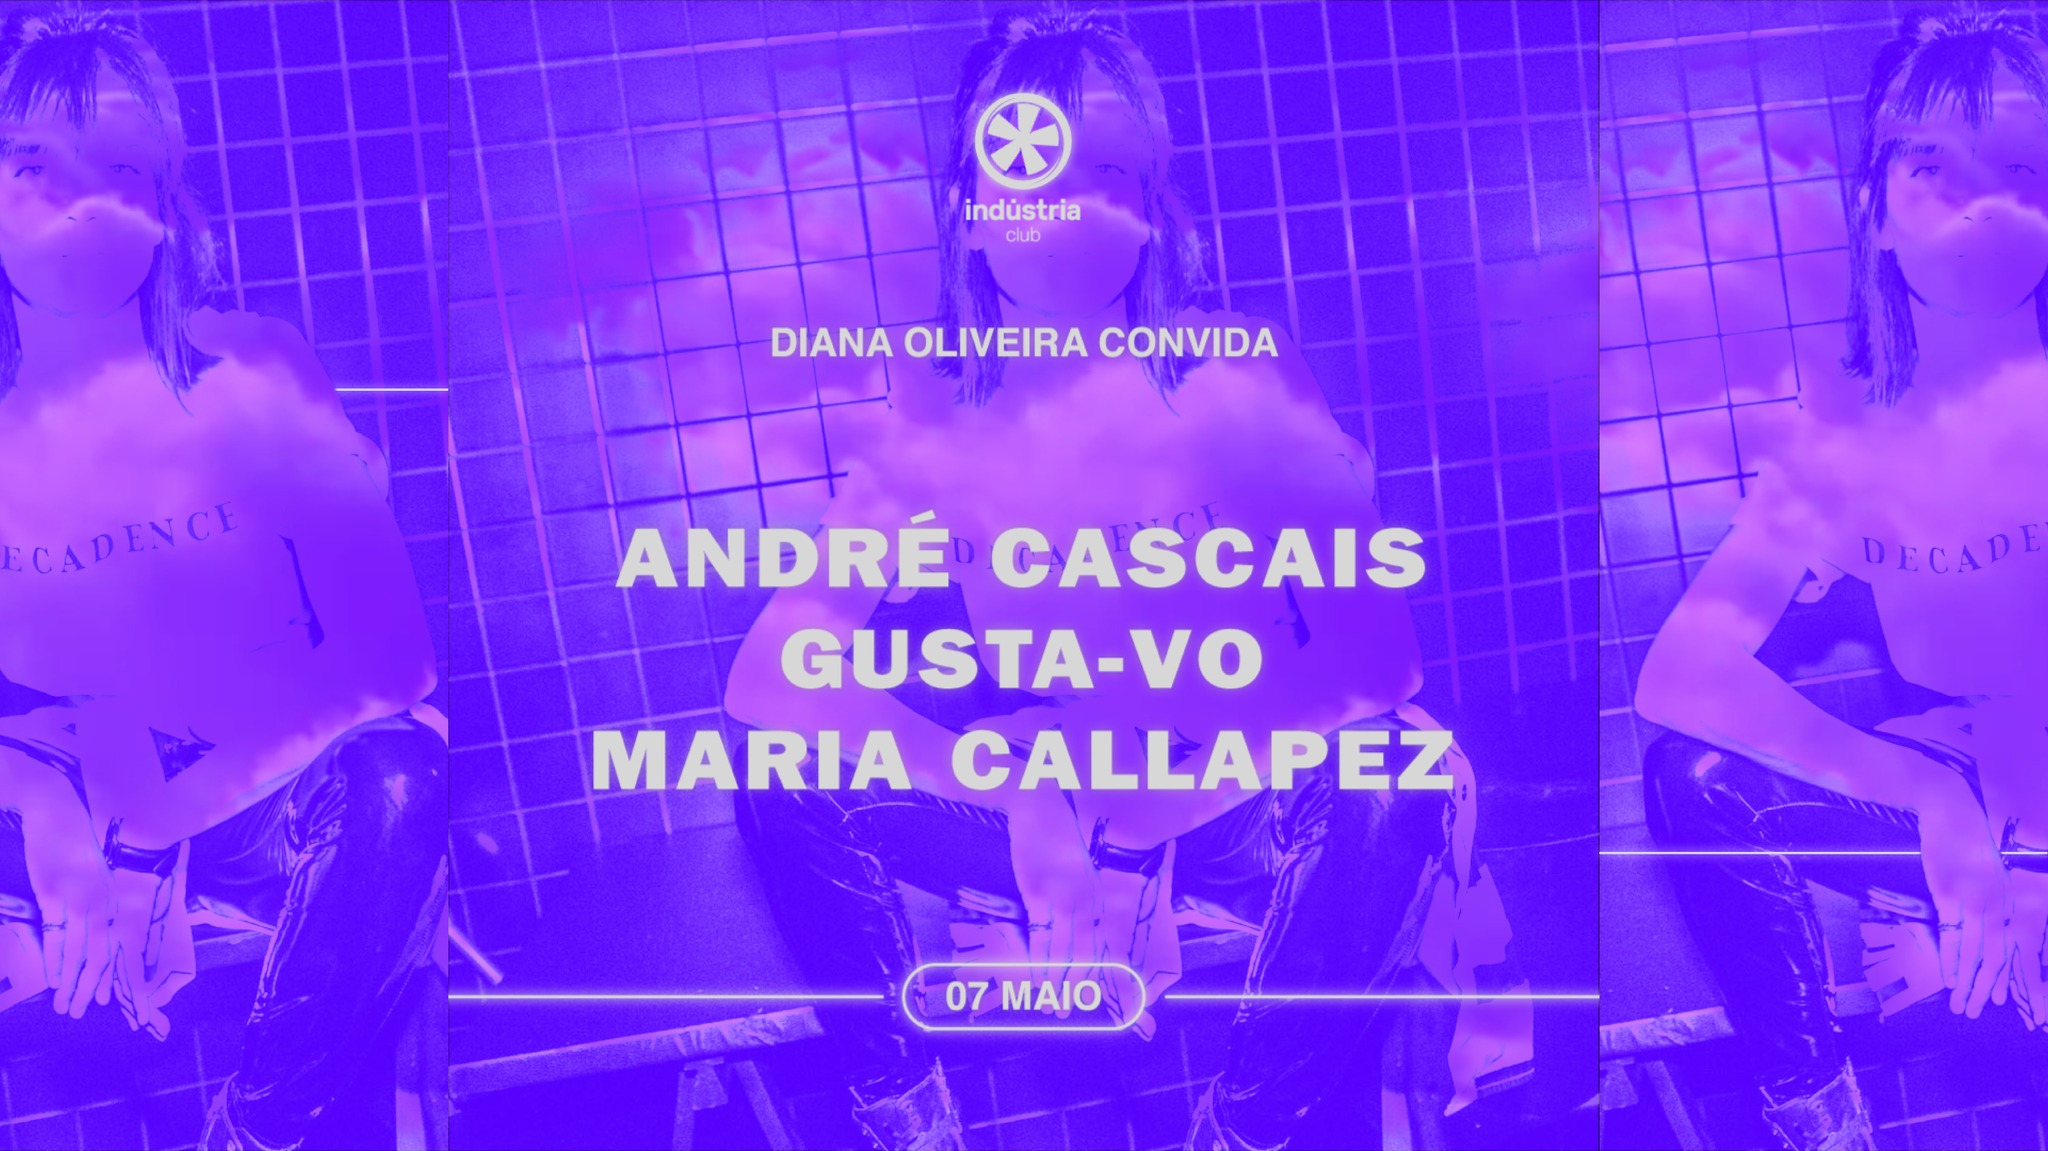 Diana Oliveira convida André Cascais Gusta-vo e Maria Callapez Industria Club